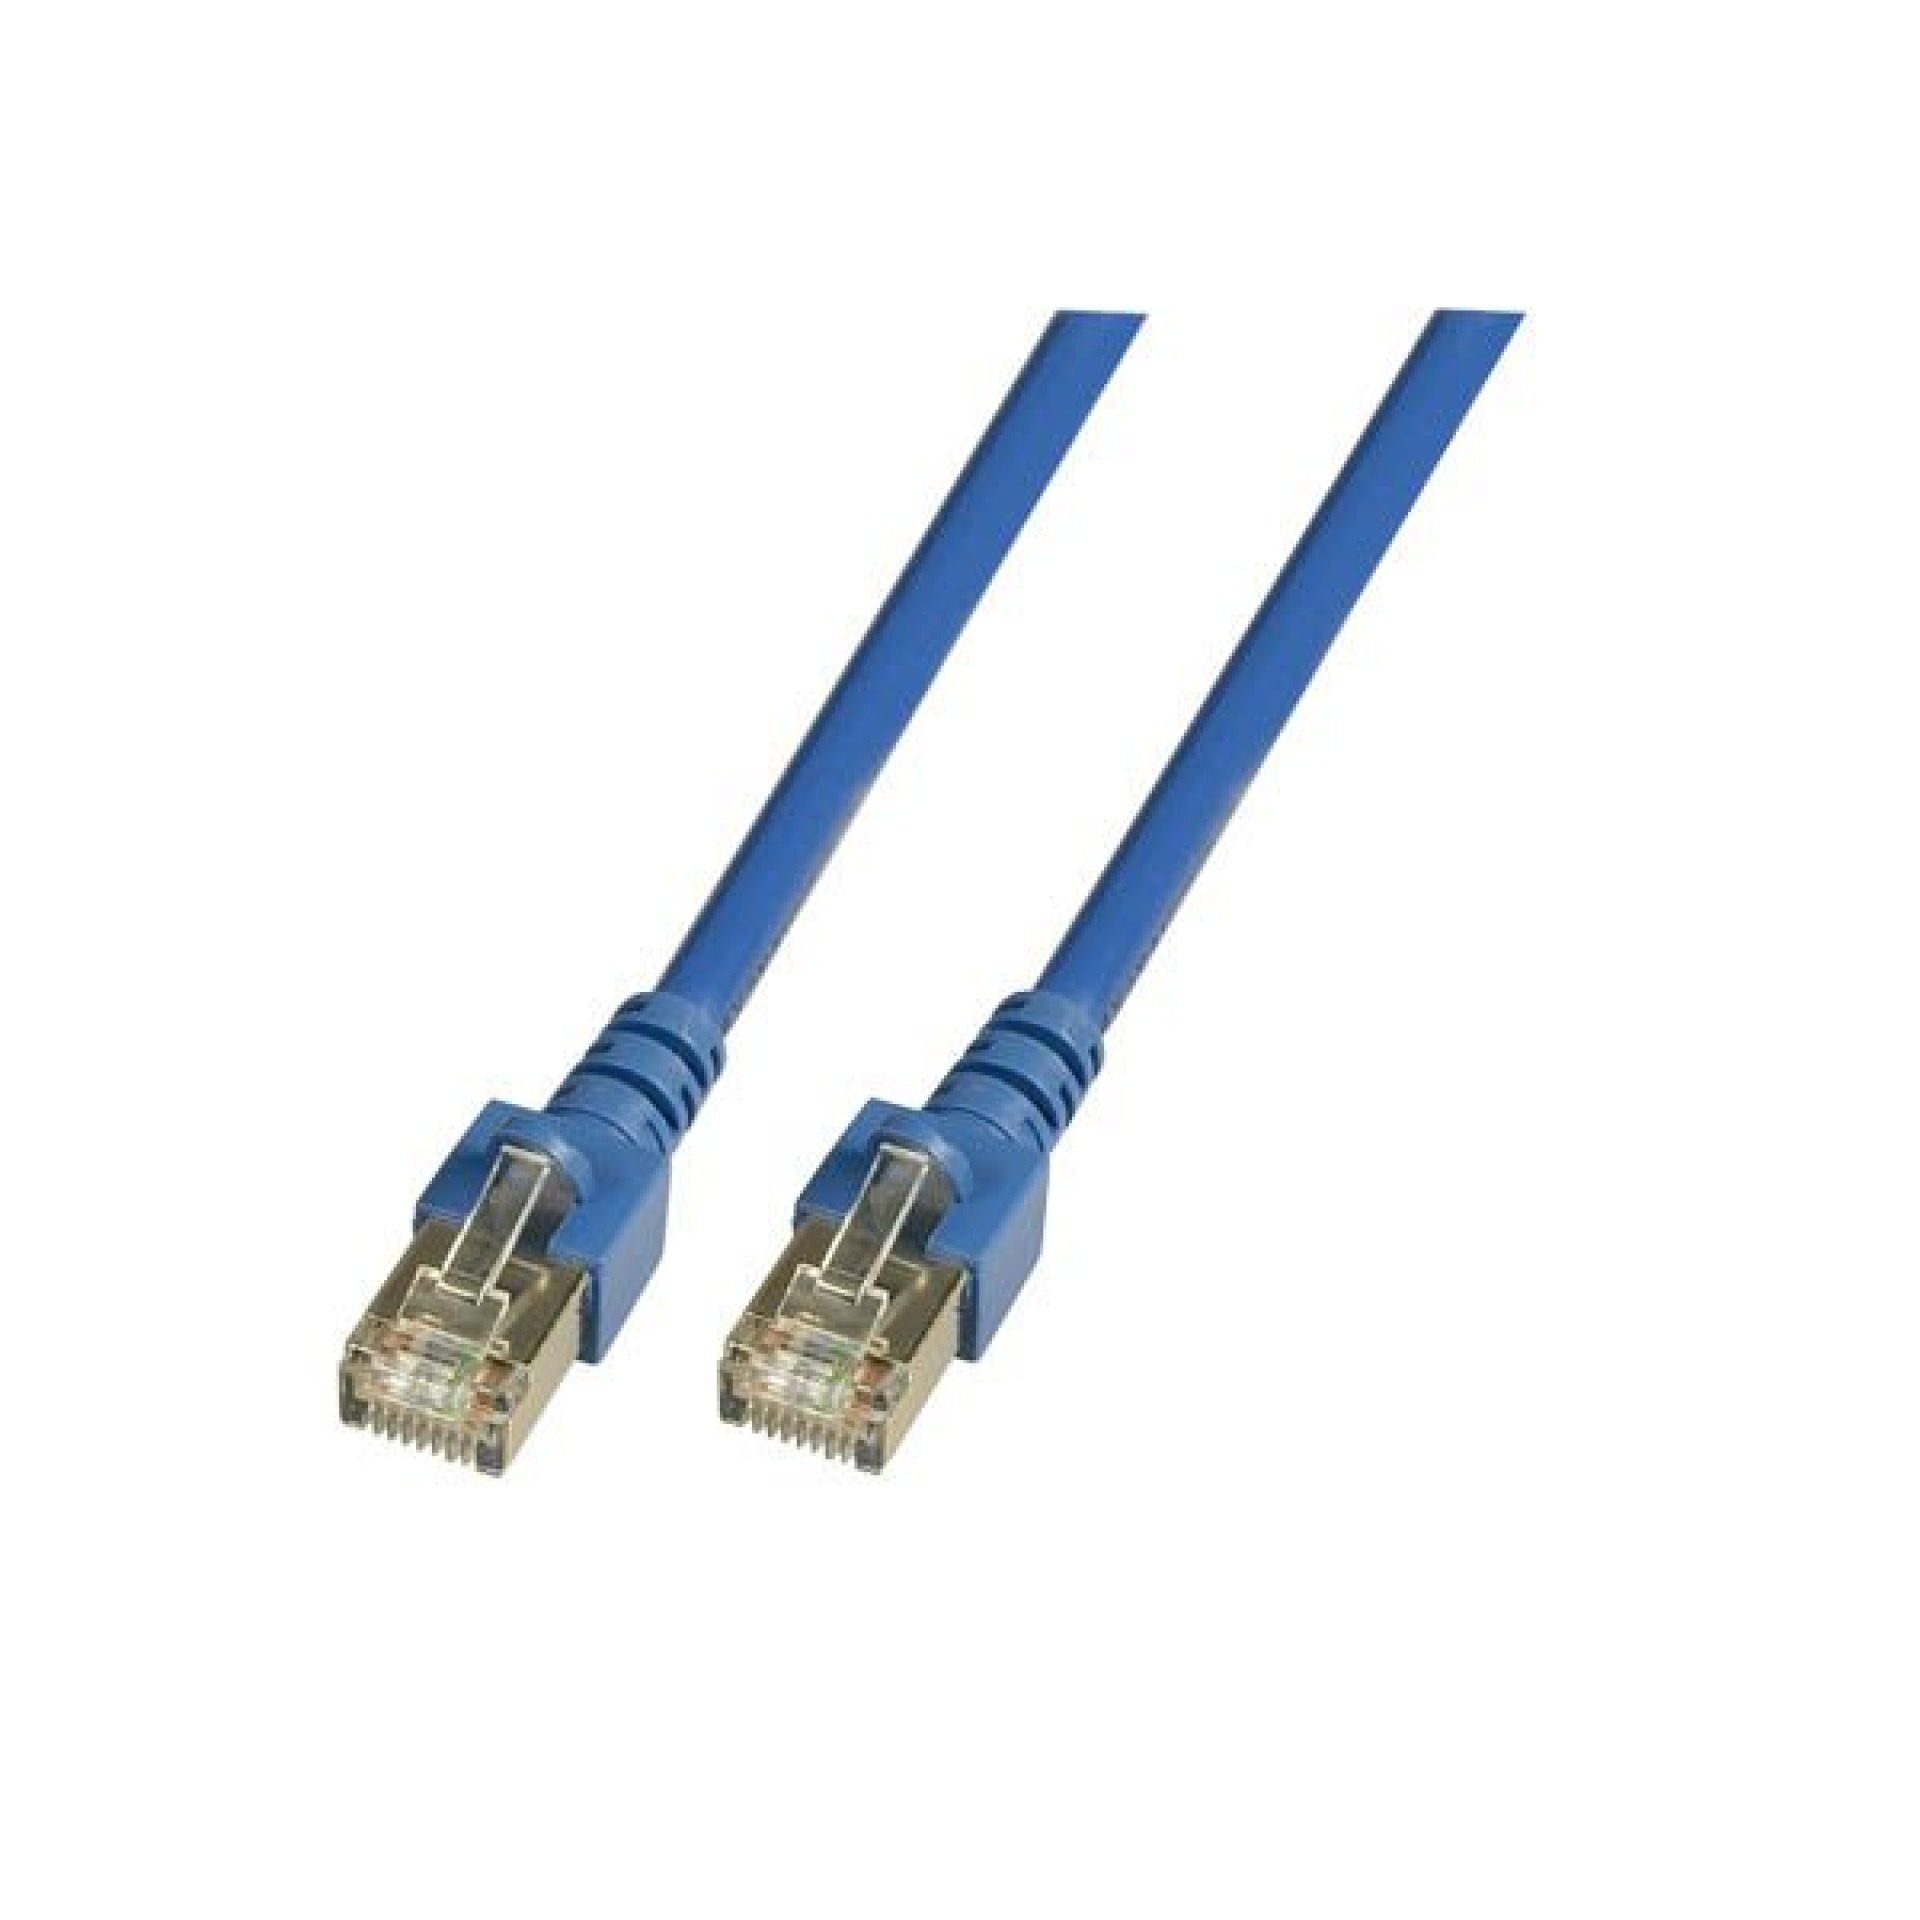 RJ45 Patch cable SF/UTP, Cat.5e, PVC, CCA, 0.5m, blue